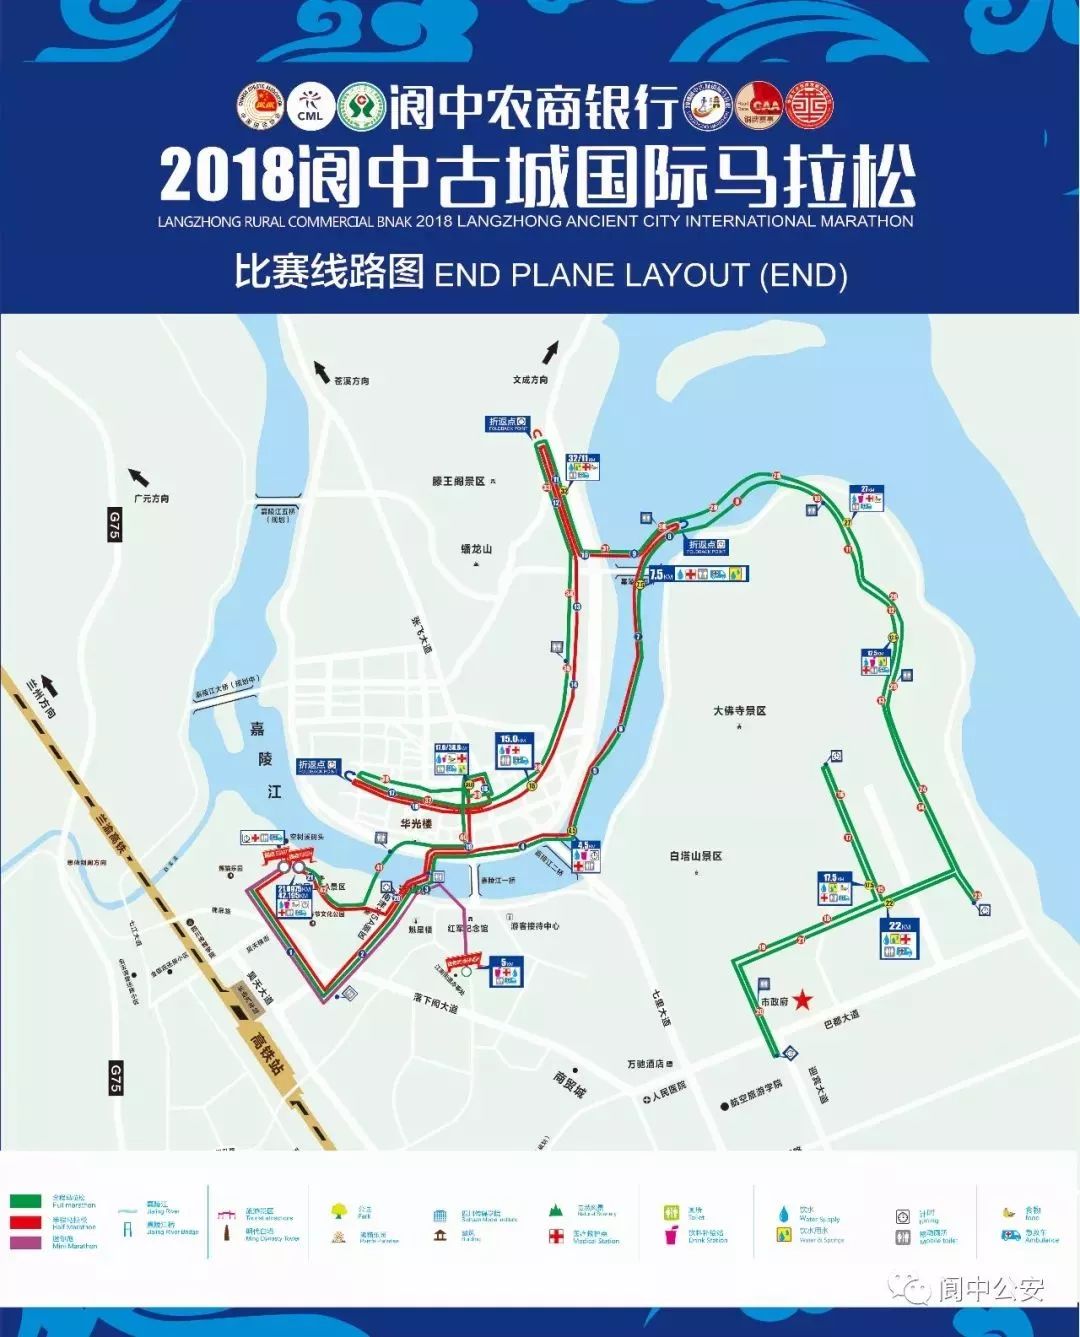 2018阆中古城国际马拉松明天举行,你所关心的都在这儿